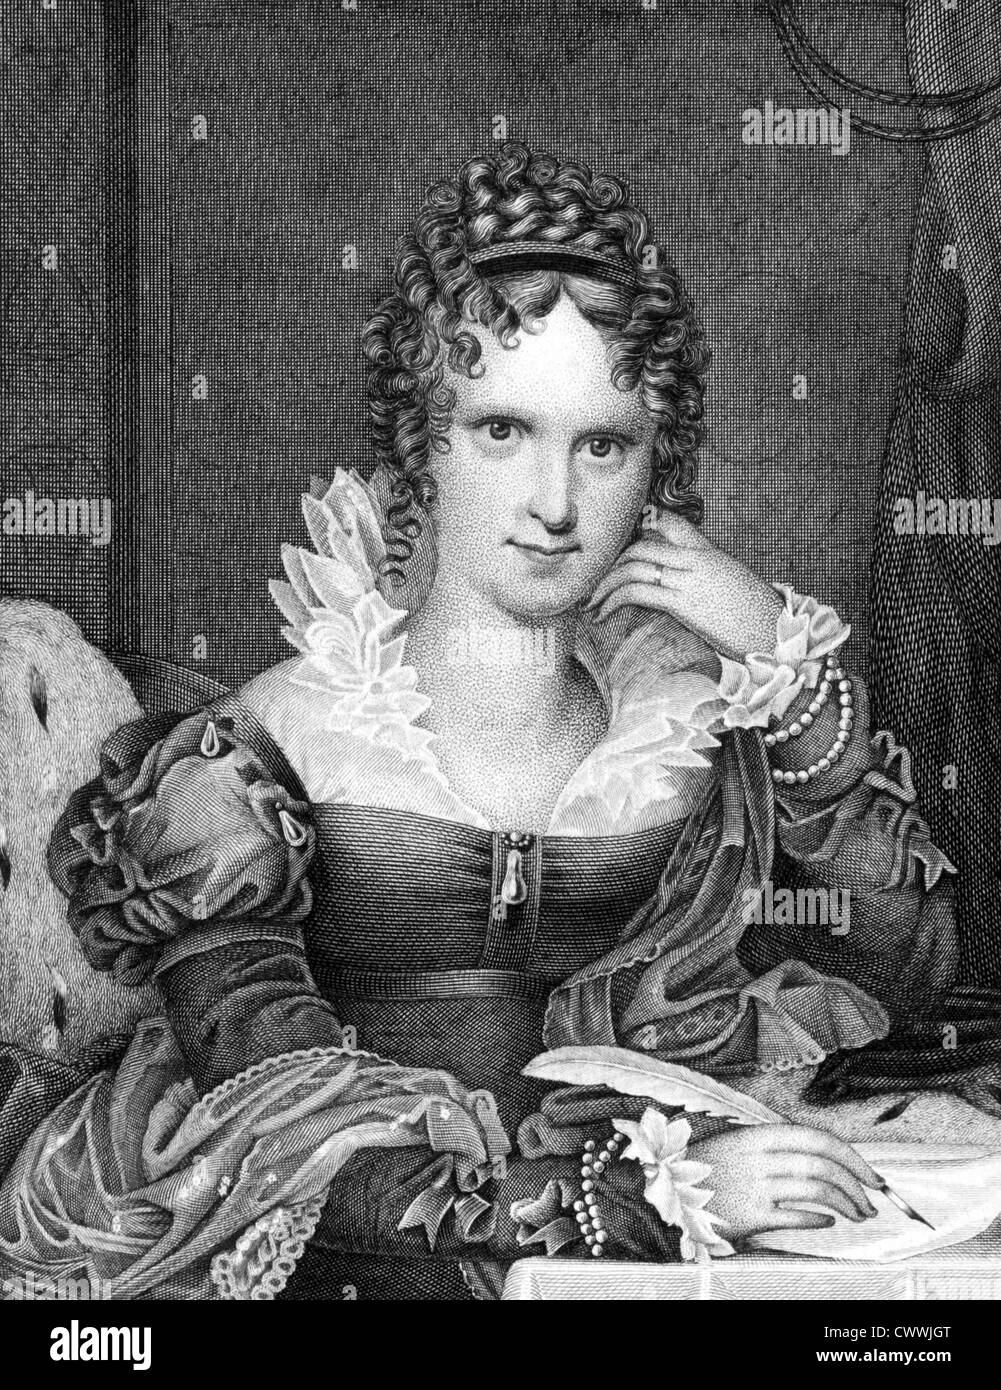 Adelaide von Saxe-Meiningen (1792-1849) auf Kupferstich aus dem Jahr 1859. Queen Consort von Großbritannien und Hannover. Stockfoto